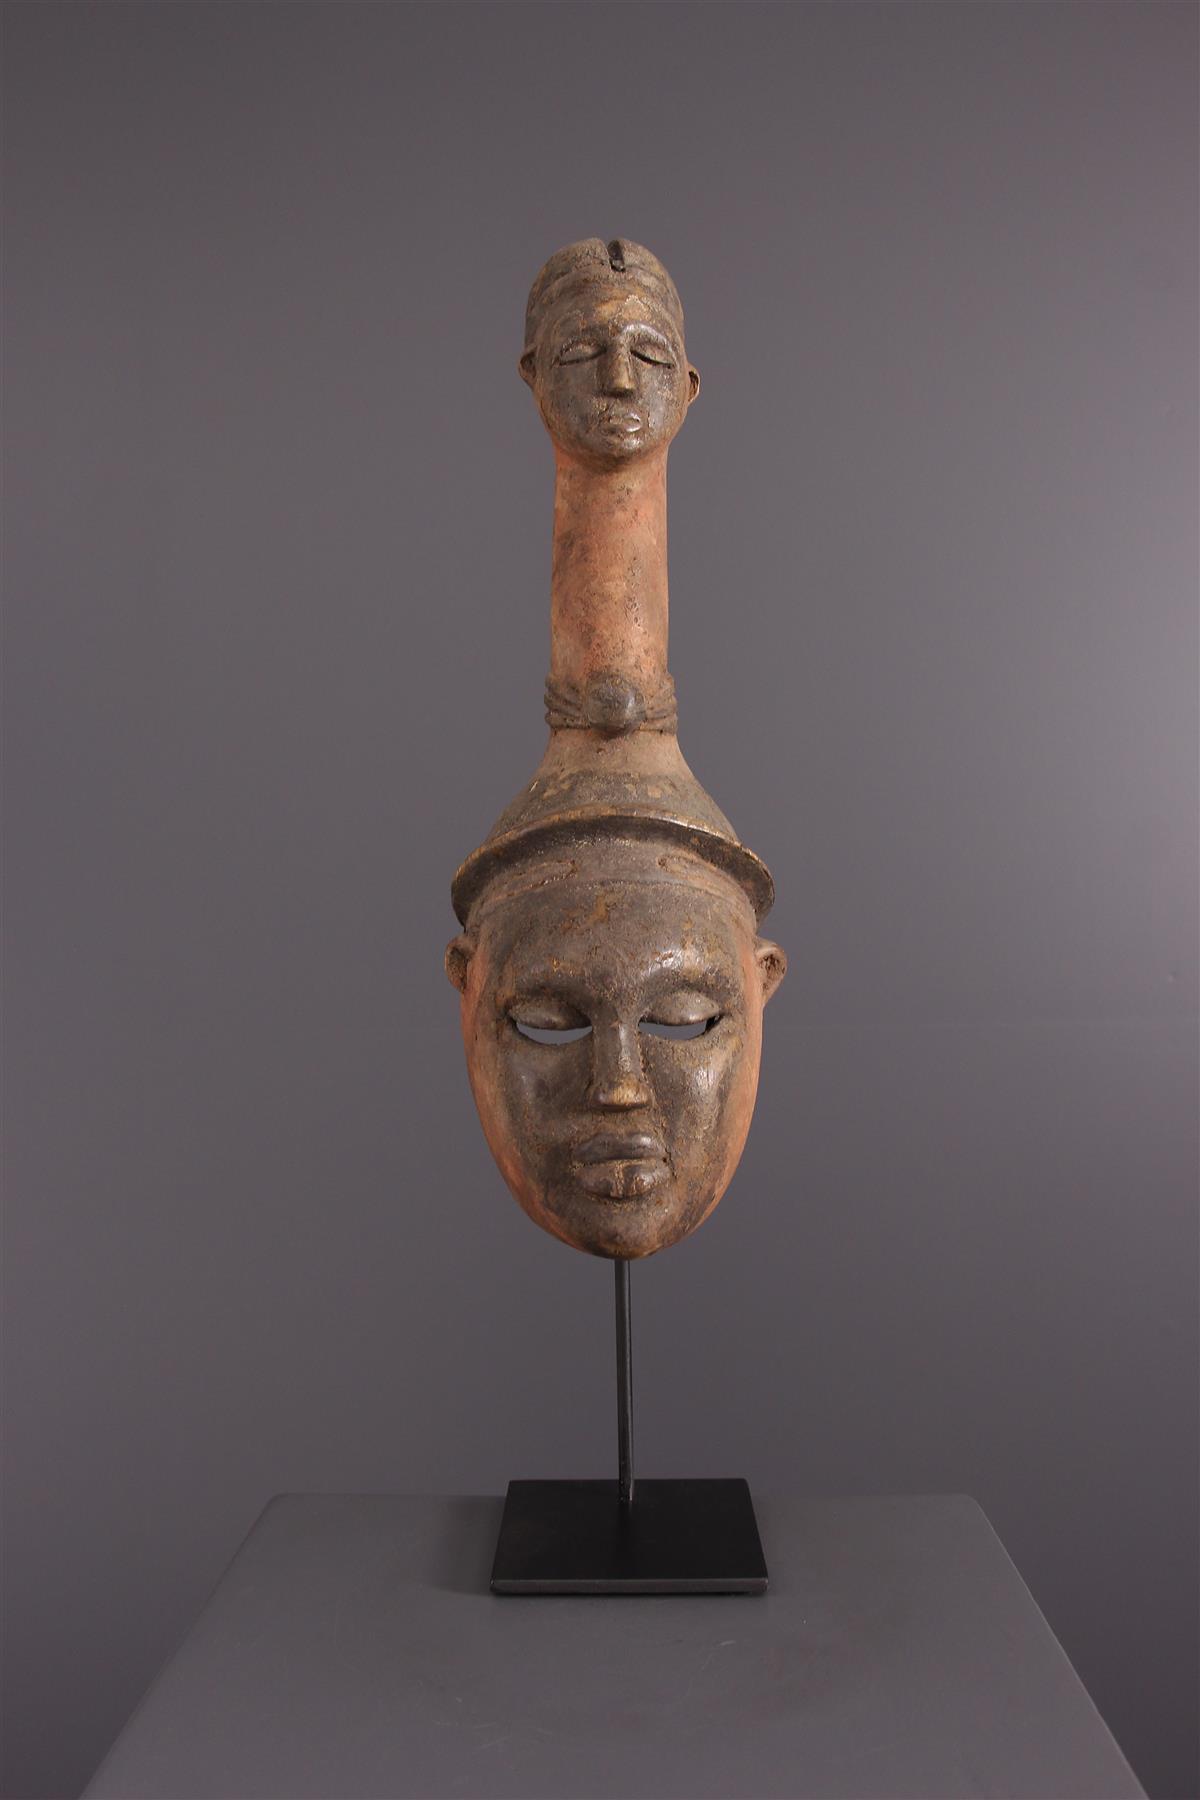 Ibibio Maschera - Arte tribal africana